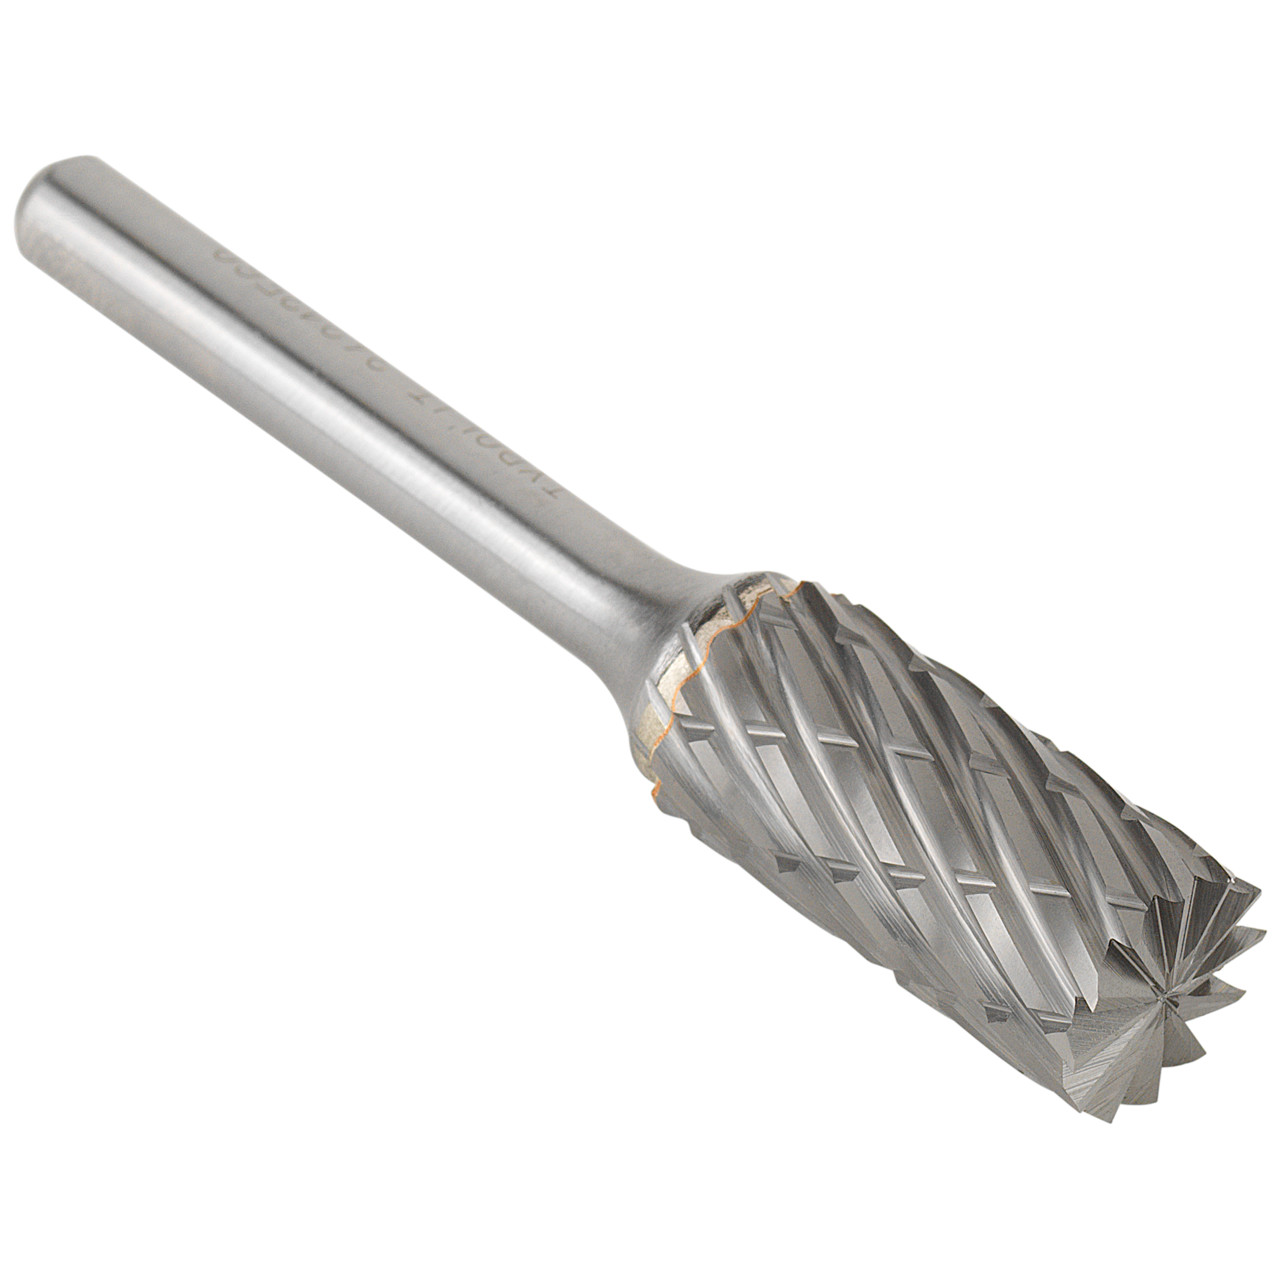 TYROLIT Hartmetallfräser DxT-SxL 13x25-6x70 Für Stahl, Form: 52ZYAS - Zylinder mit Stirnverzahnung, Art. 34213560